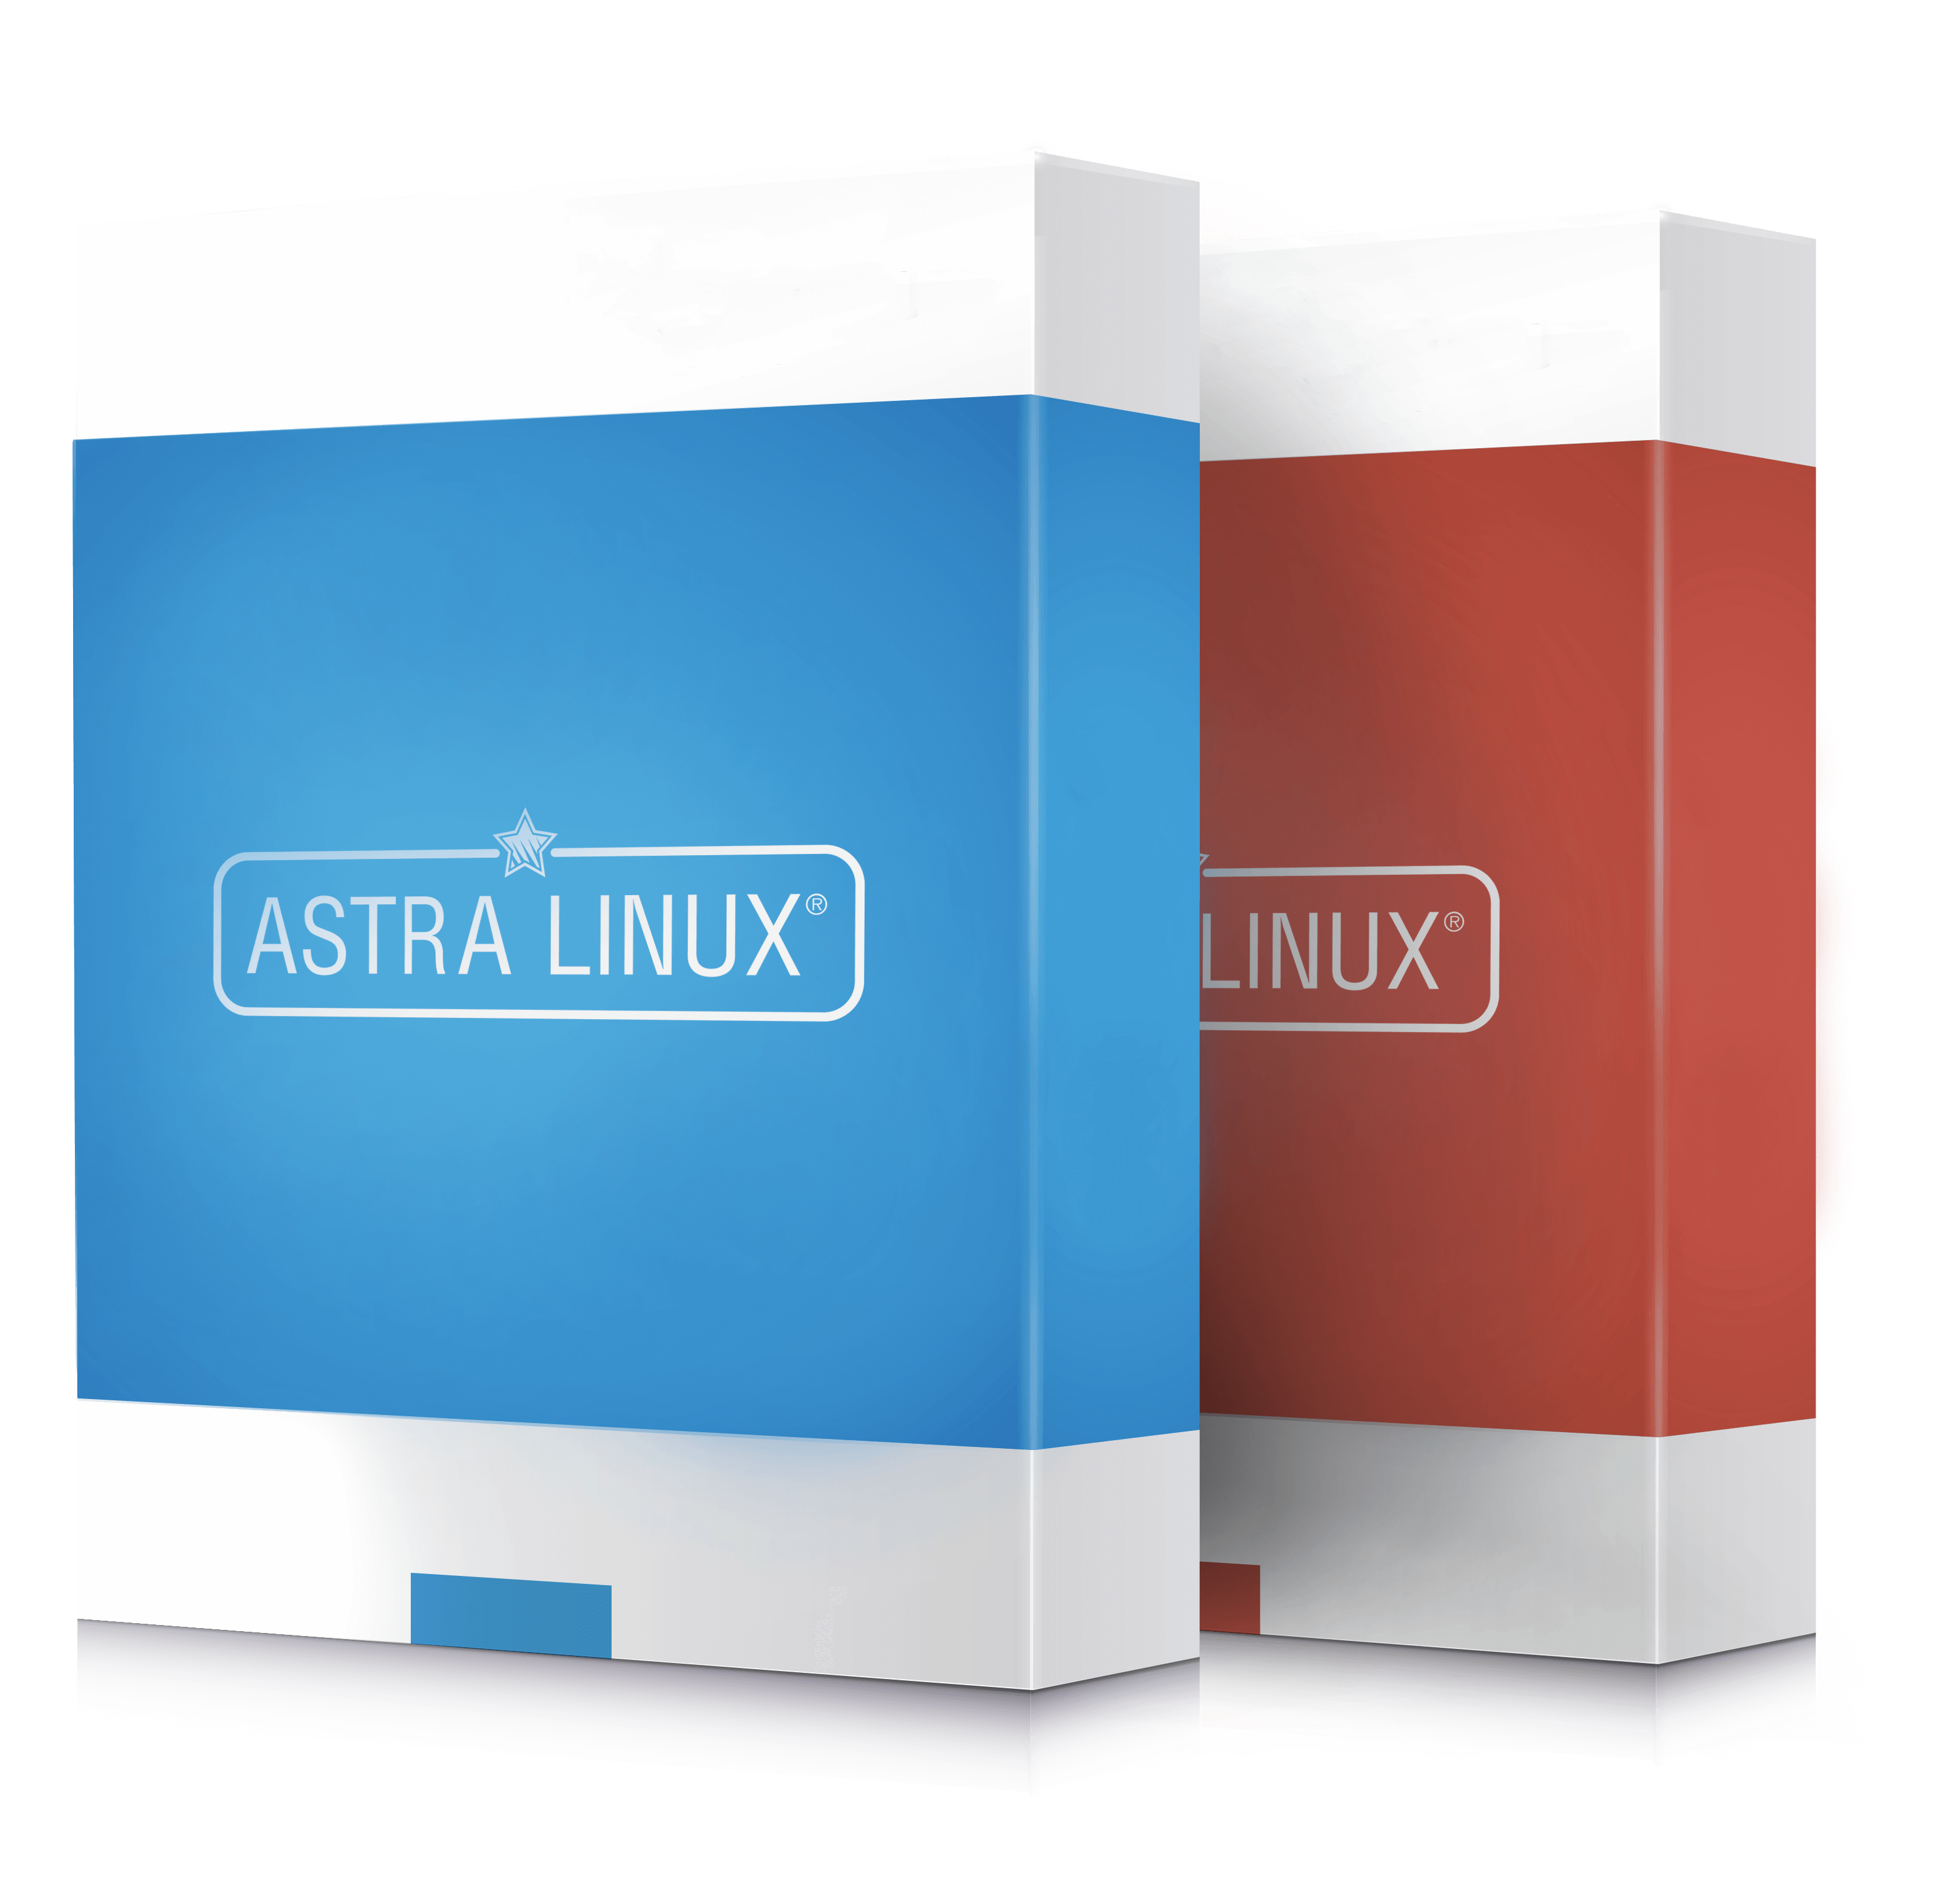 Прочие продукты  Astra Linux (поддержка, образование и т.д.)